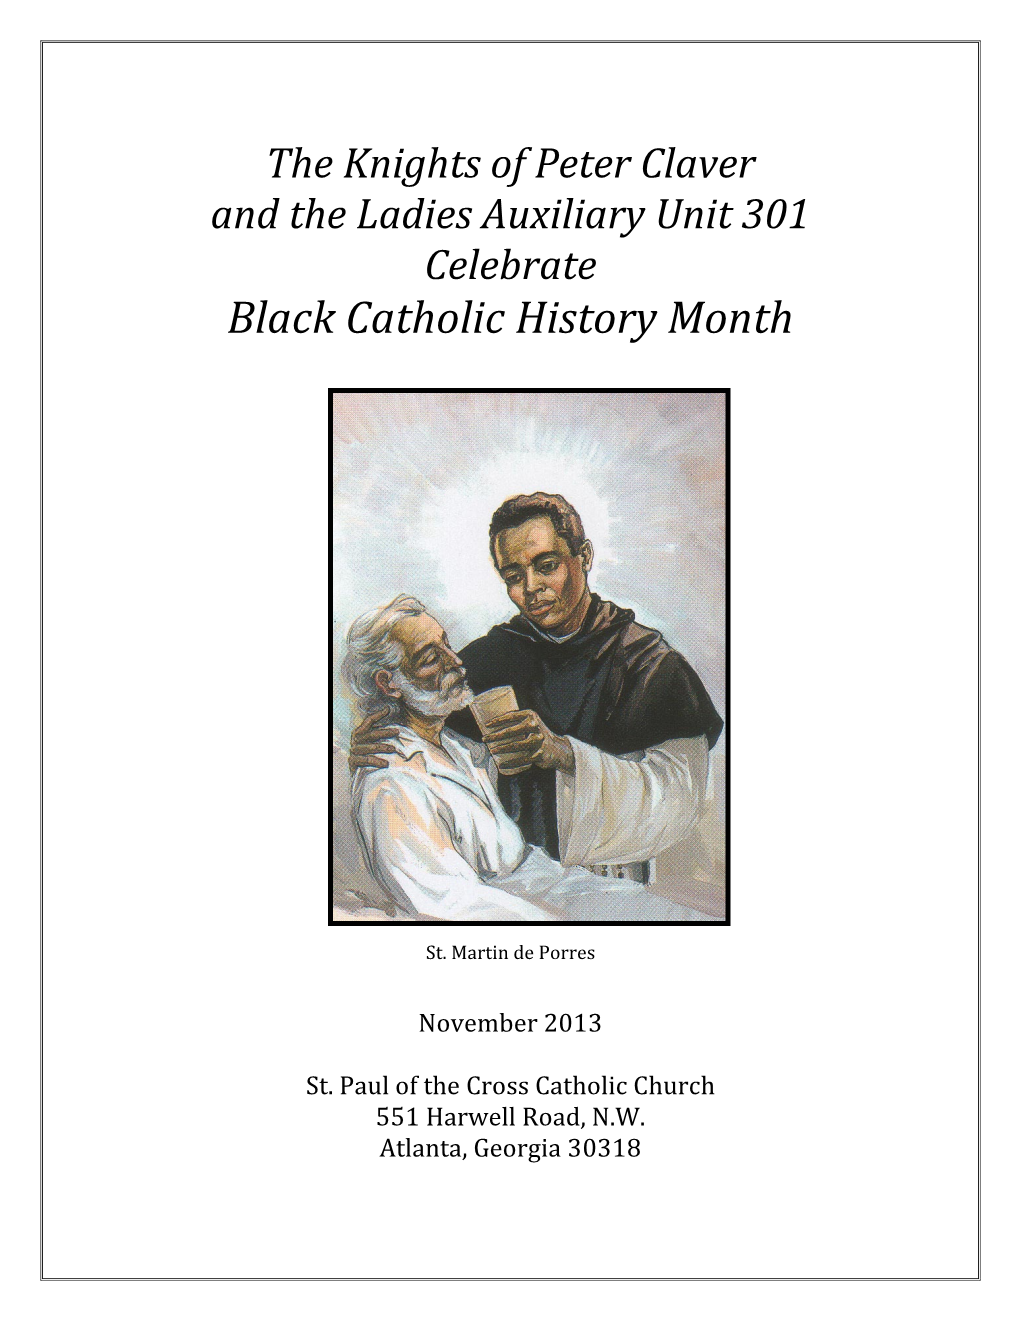 Black Catholic History Month